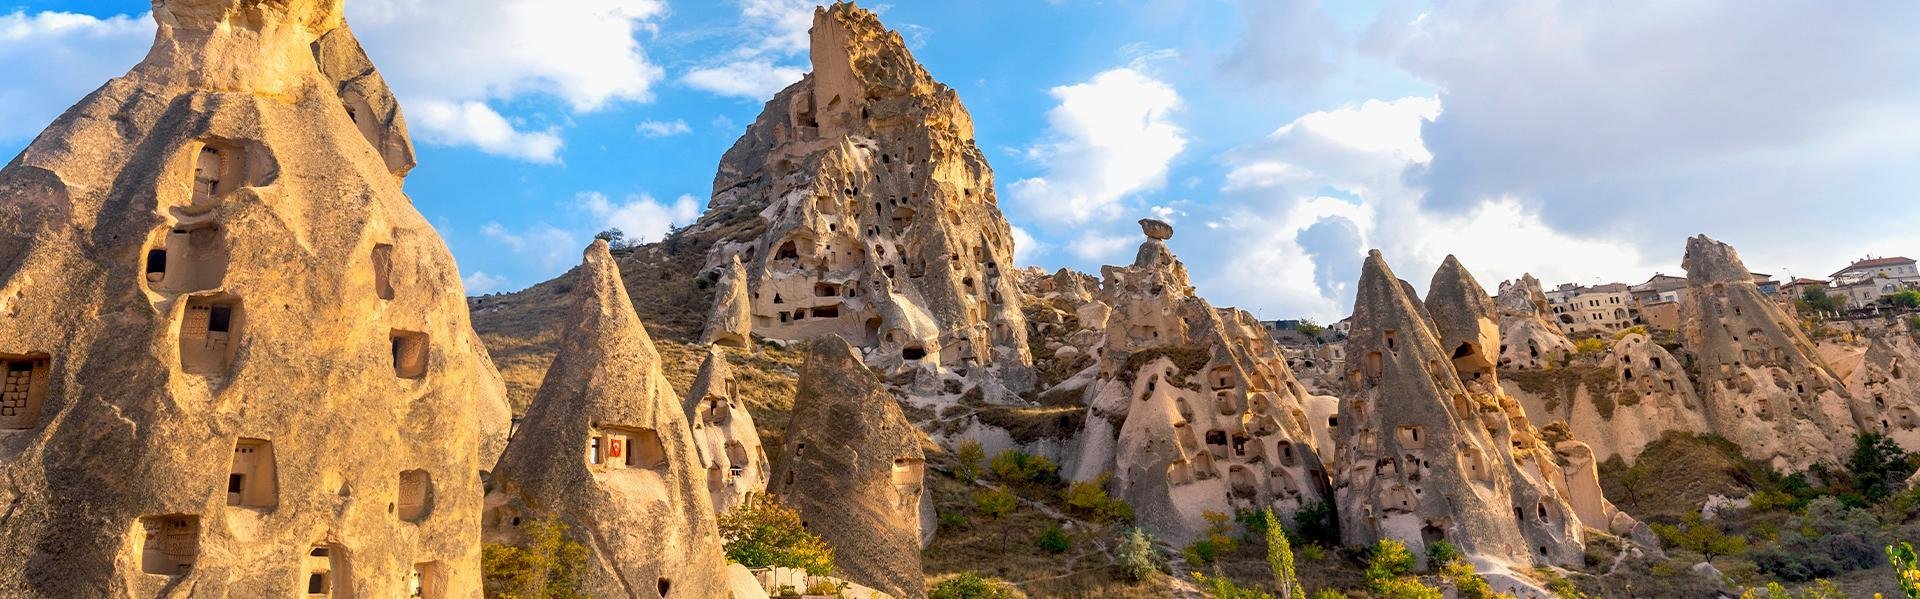 Cappadocië in Turkije